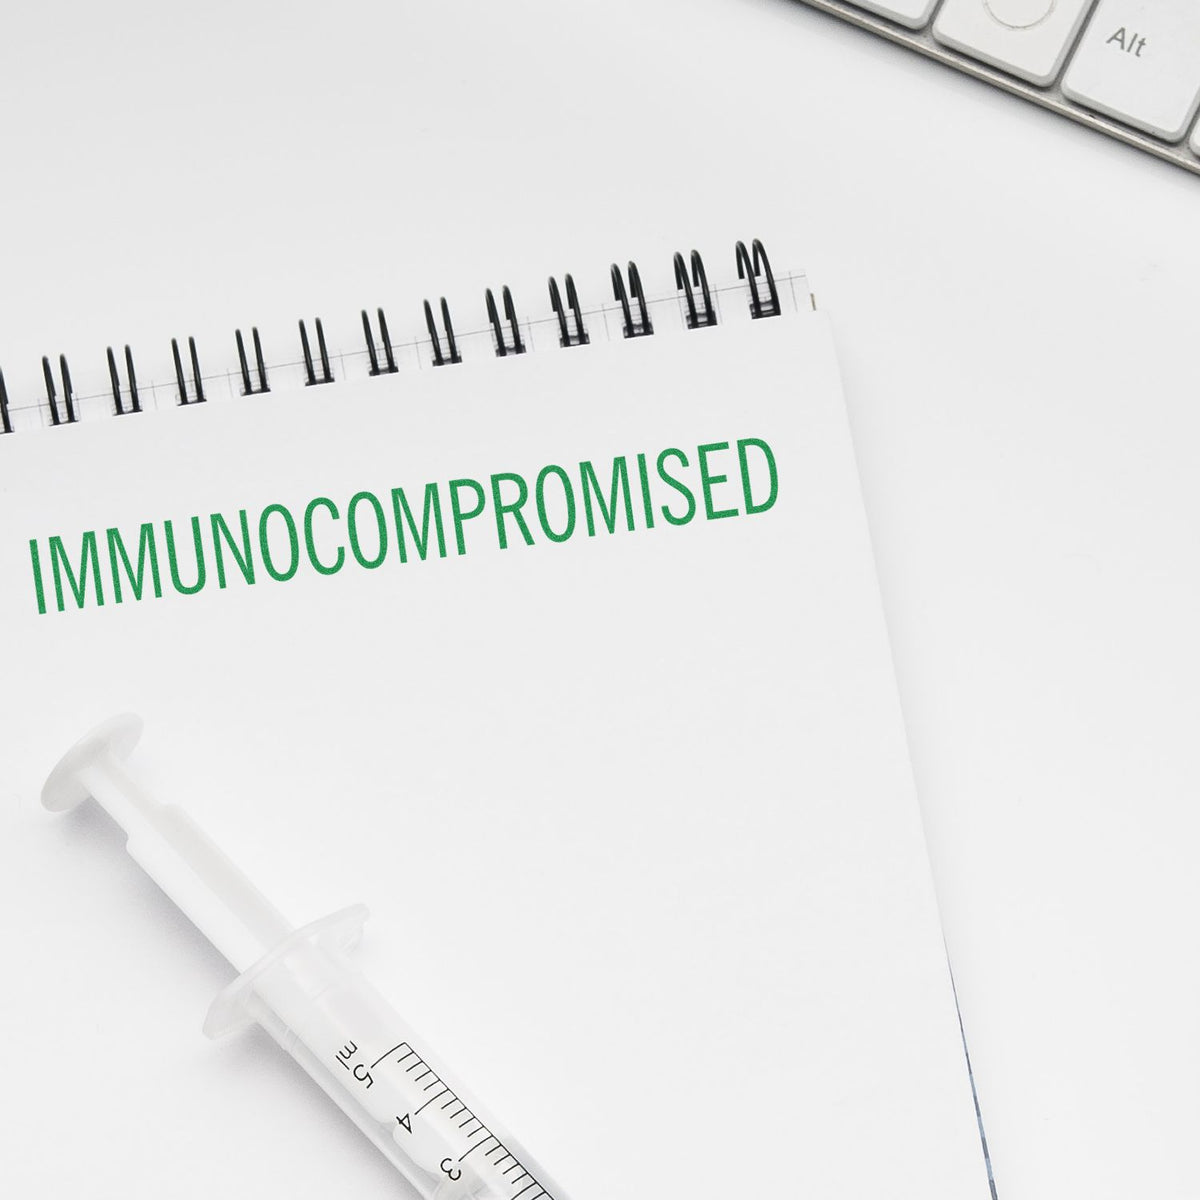 Slim Pre-Inked Immunocompromised Stamp In Use